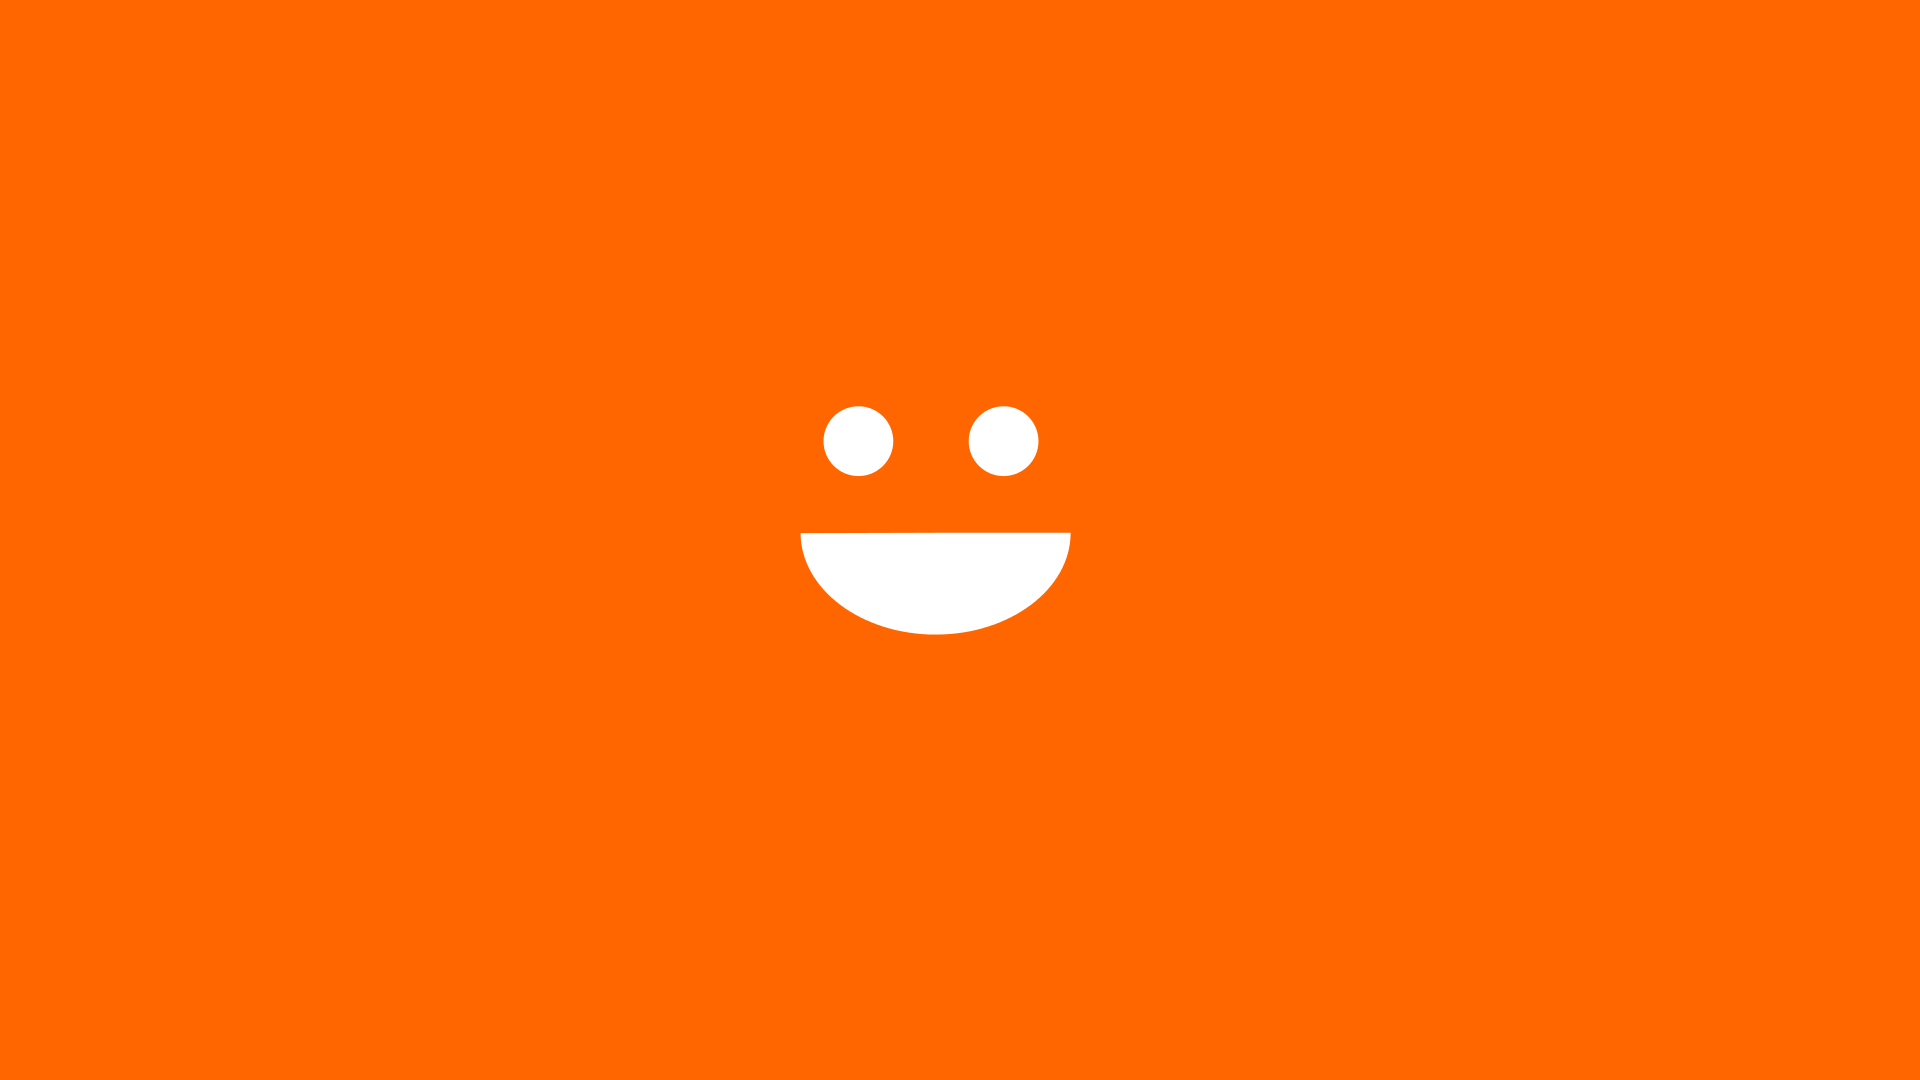 Wallpaper Orange, smile, minimal